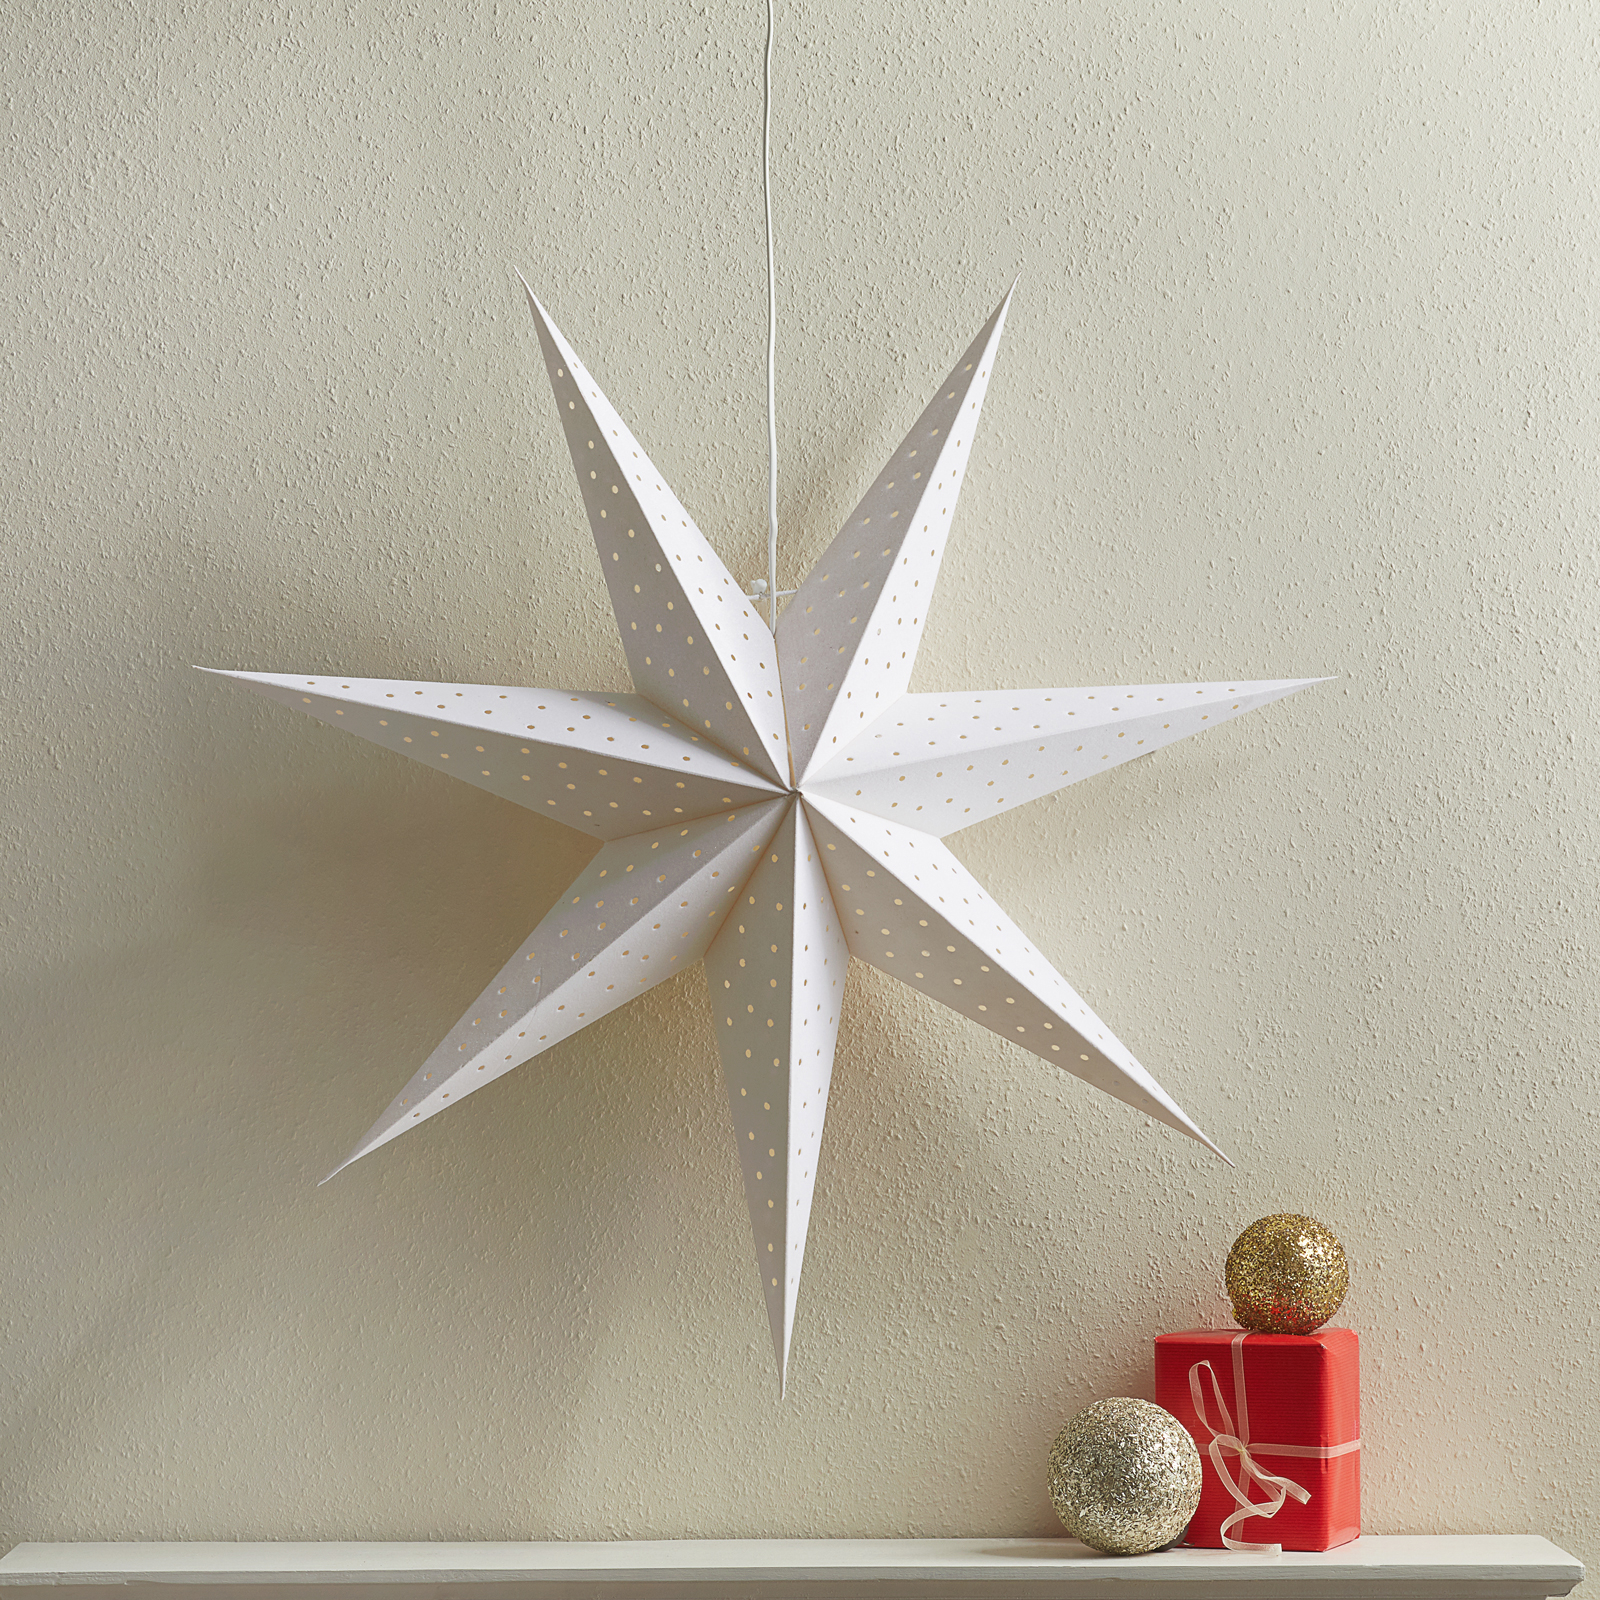 Star Clara for hanging, velvet look Ø 75 cm, white